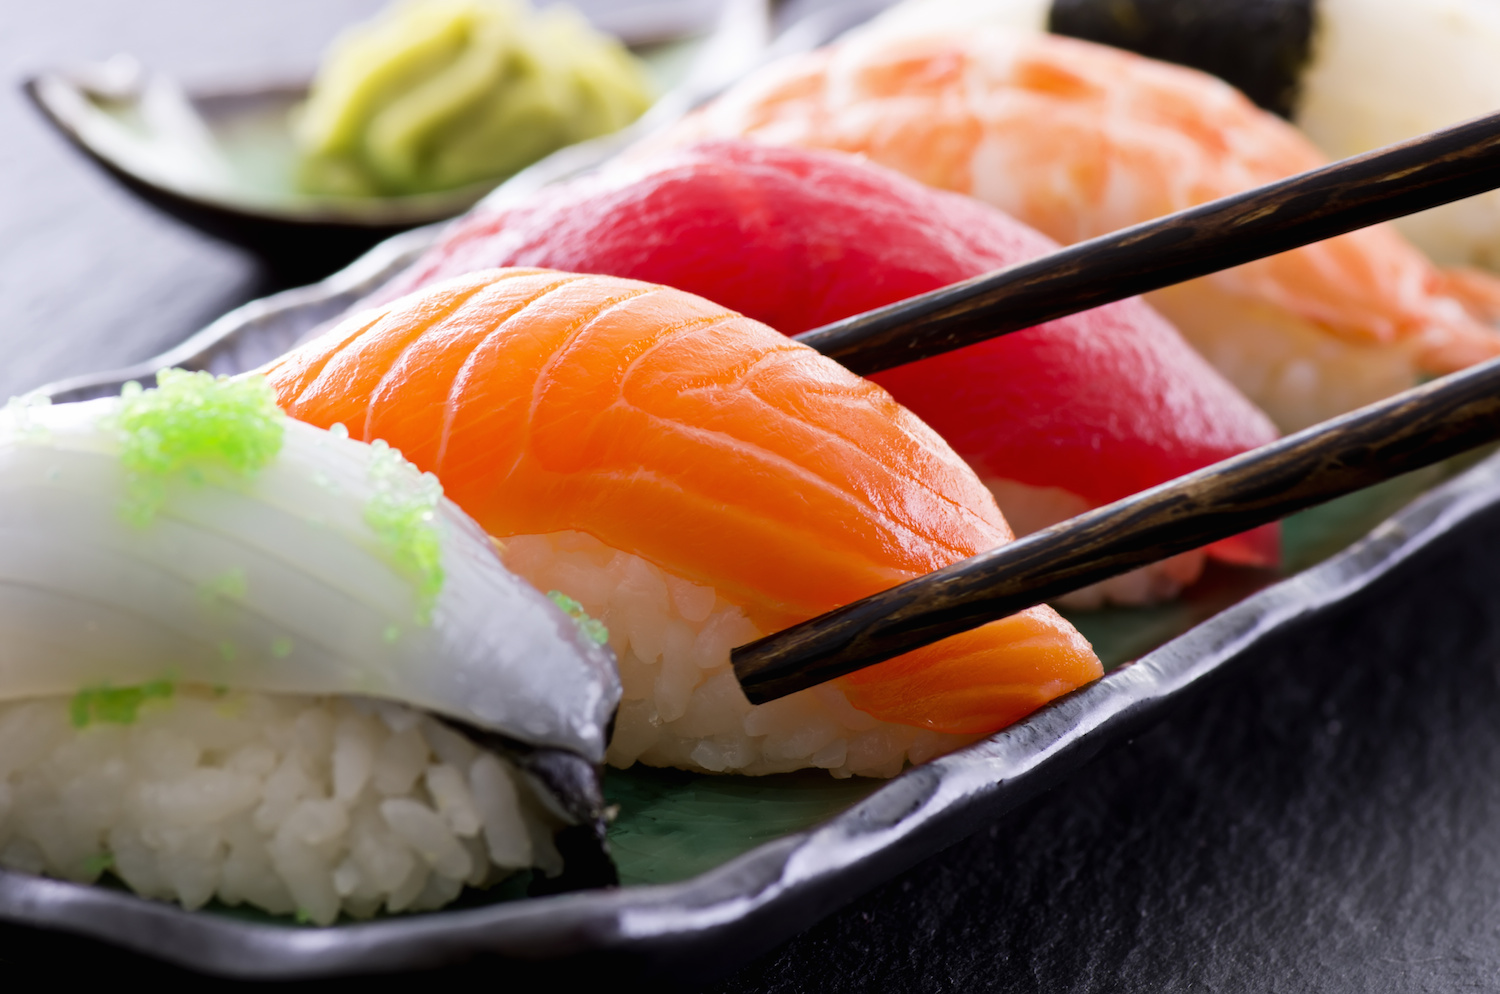 sushi ajuta u pierde in greutate)